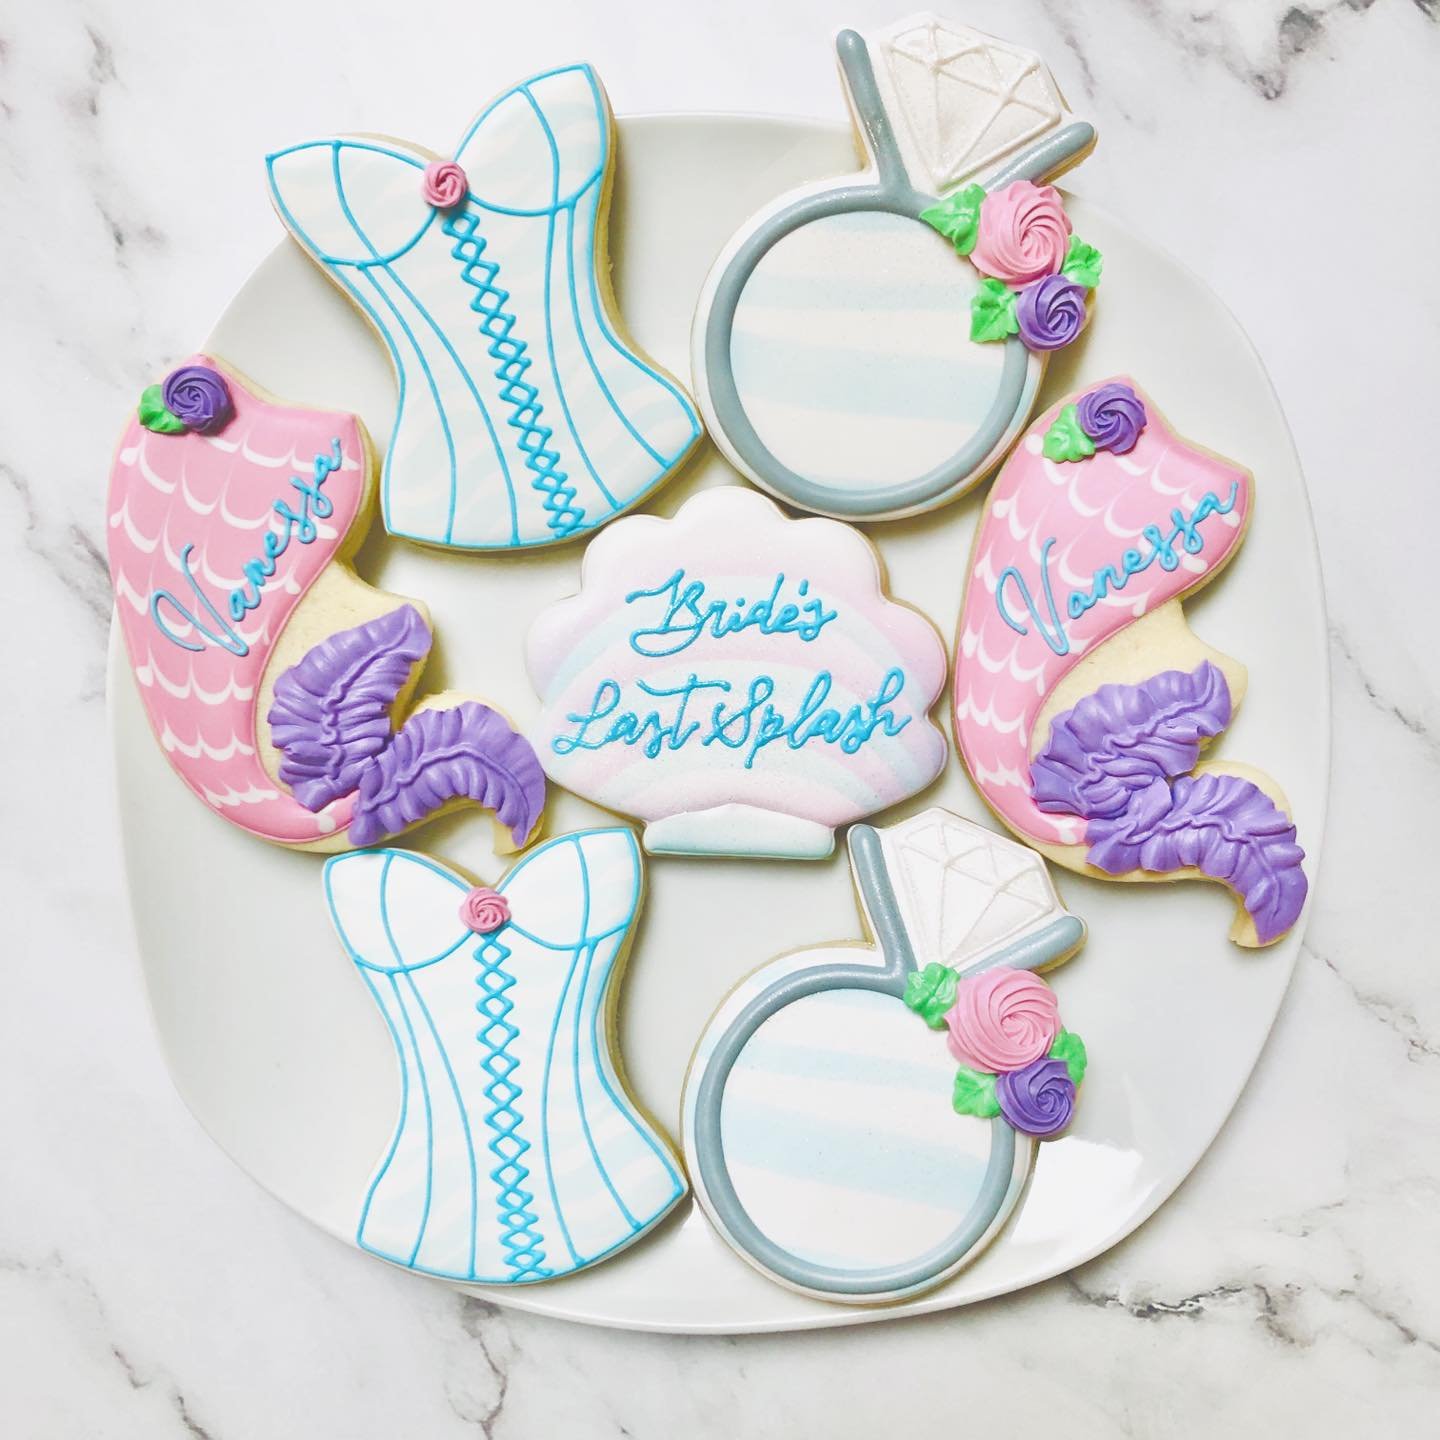 Cookies for a bridal shower! 🎉💍
.
.
.
.
#brideslastsplash #bridalshower #bridalshowercookies #weddingcookies #royalicing #royalicingcookies #cookiefavors #decoratedsugarcookies #customcookies #sugarart #sugarcraft #edibleart #cookieart #instabake #